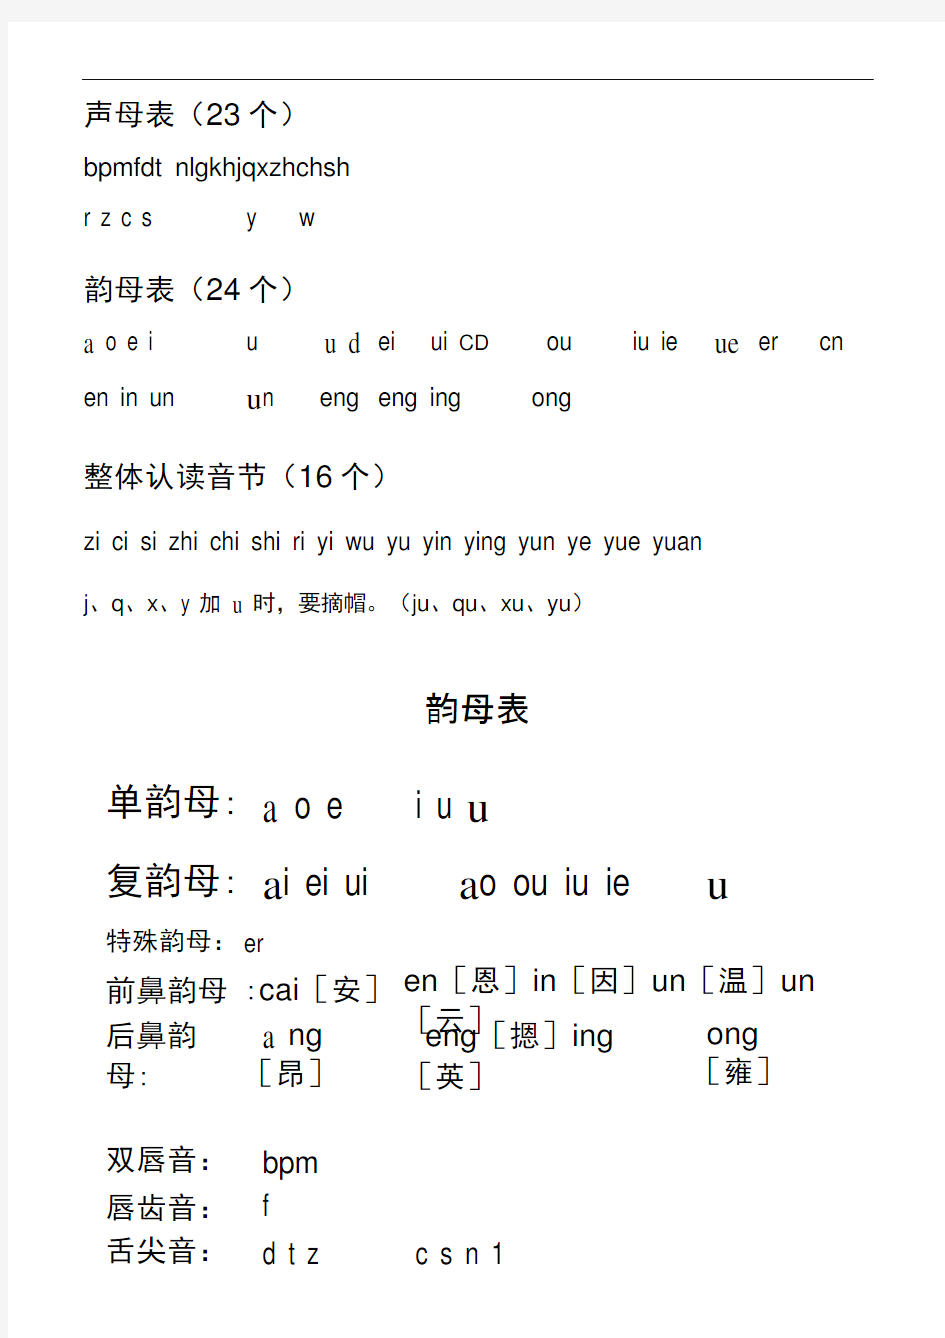 完整小学一年级汉语拼音字母表详细